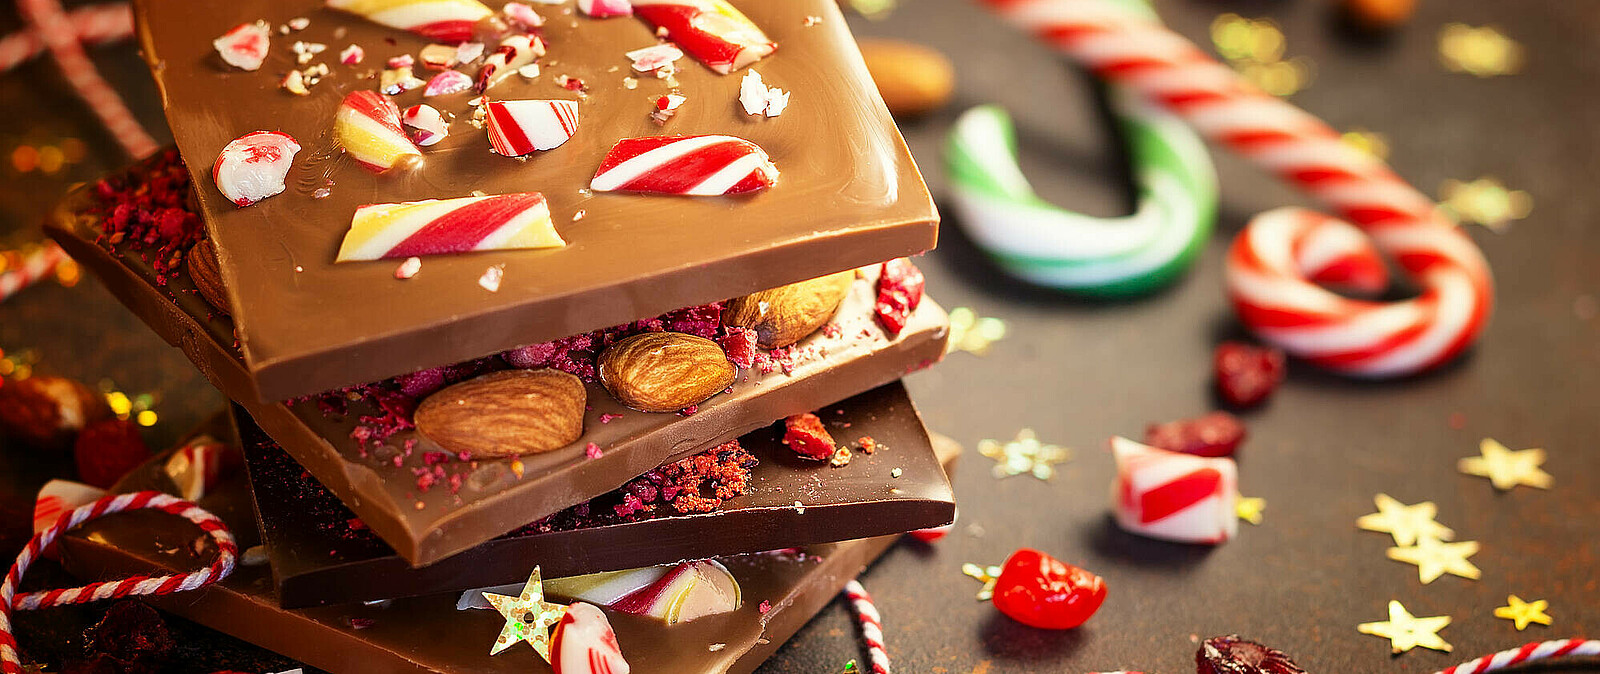 Schokoladenkurs in Dresden mit vielen Schokoladen und Pralinen - selbst hergestellt, zum Advent und in der Weihnachtszeit.